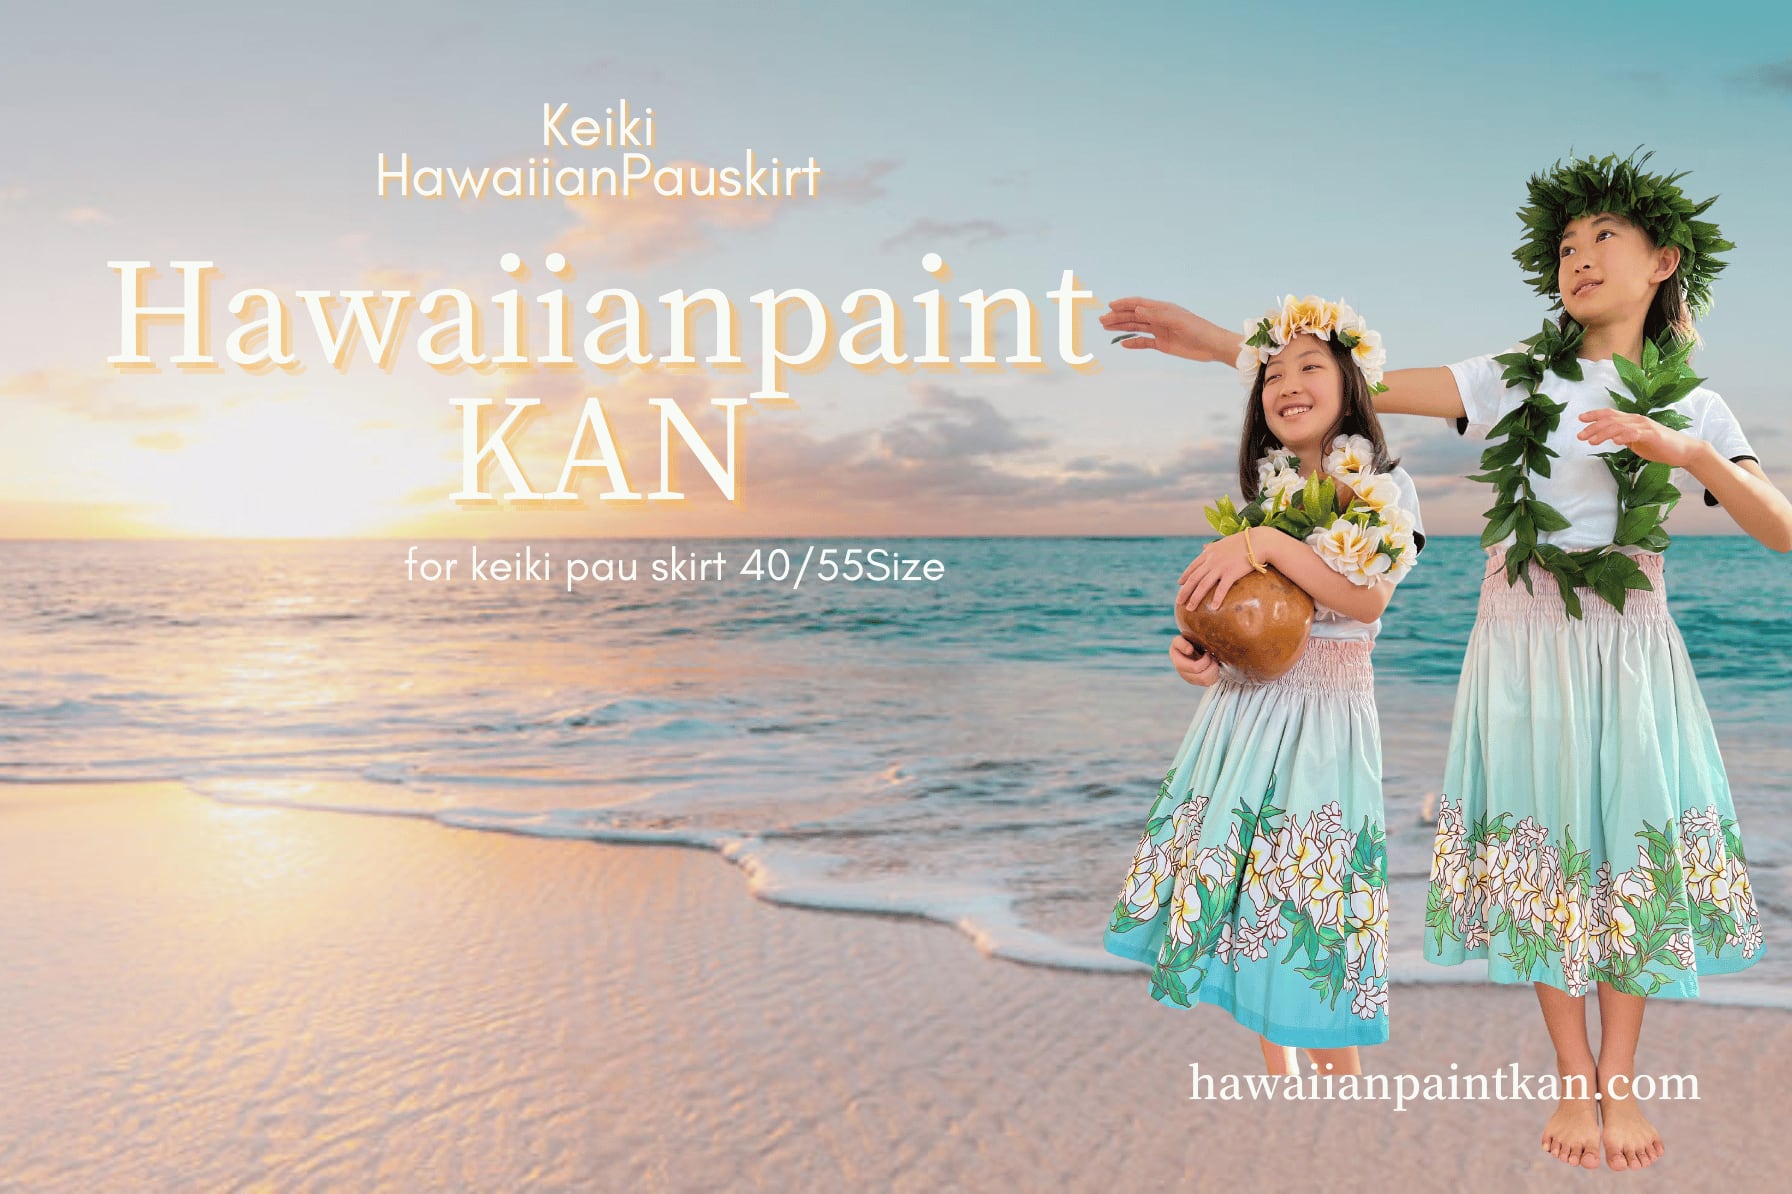 HawaiianPaintKAN WEBSHOP